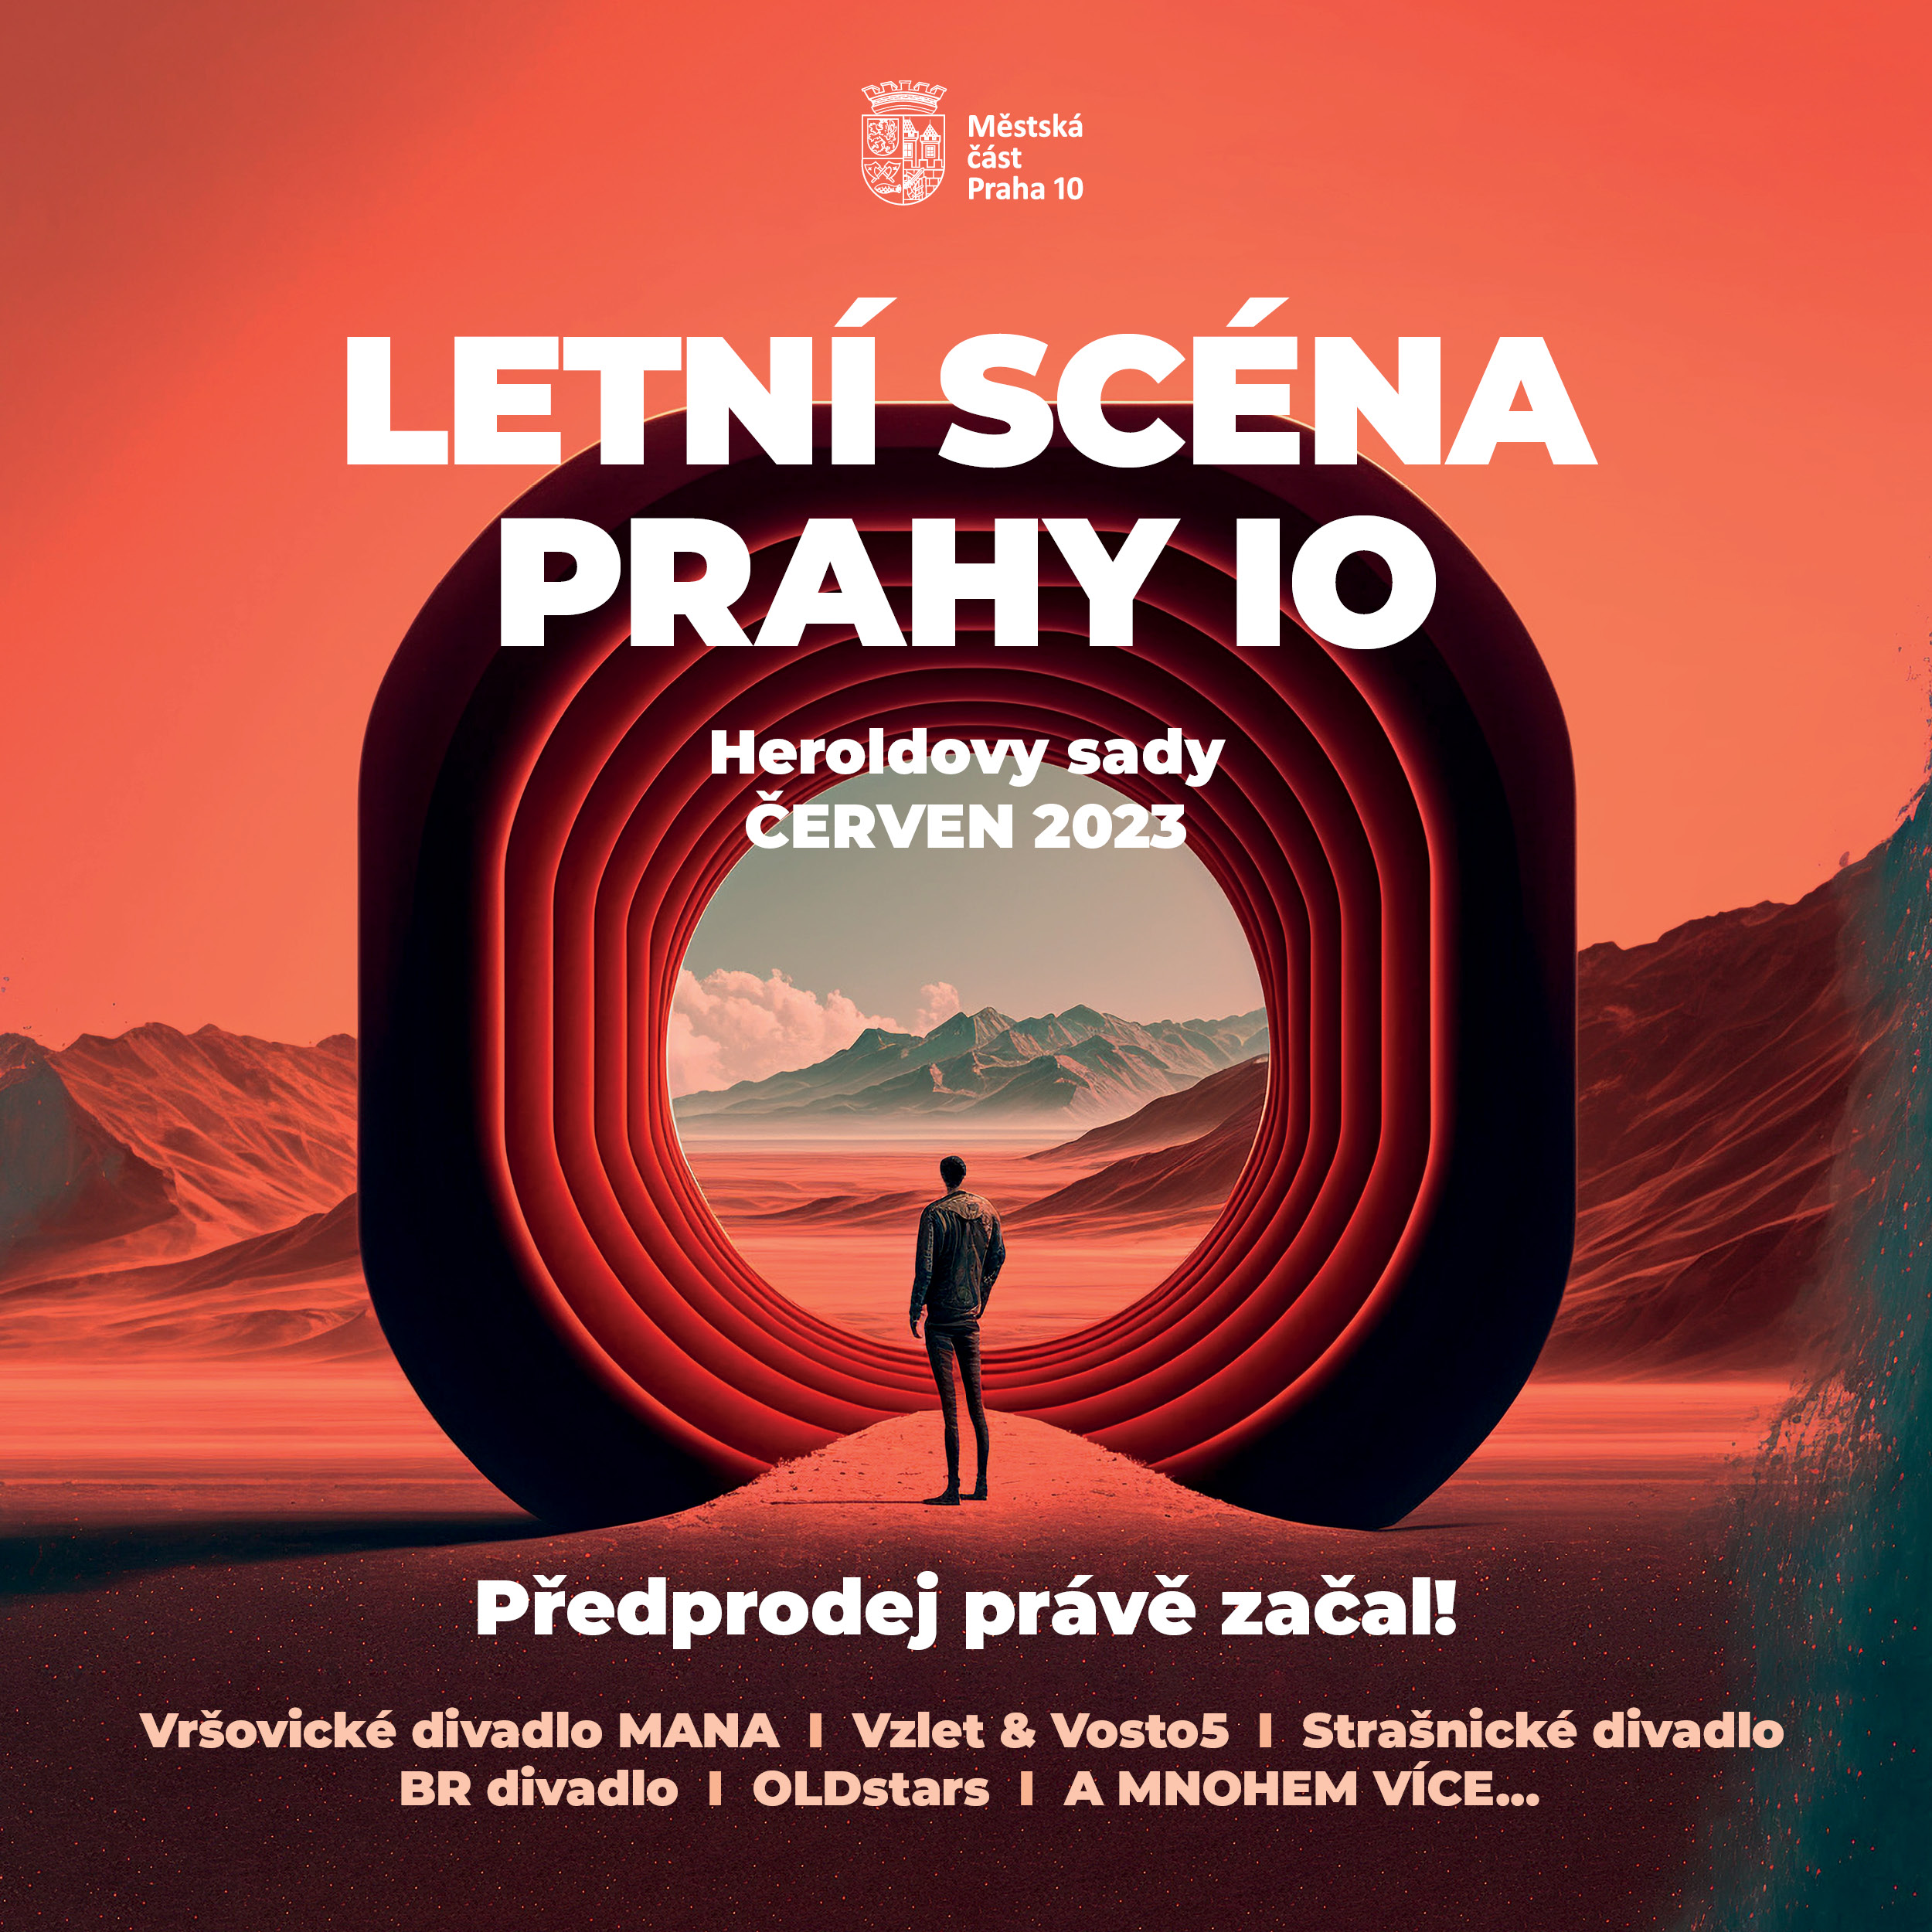 Pozvánka na akci Letní scéna Prahy 10 pro rok 2023